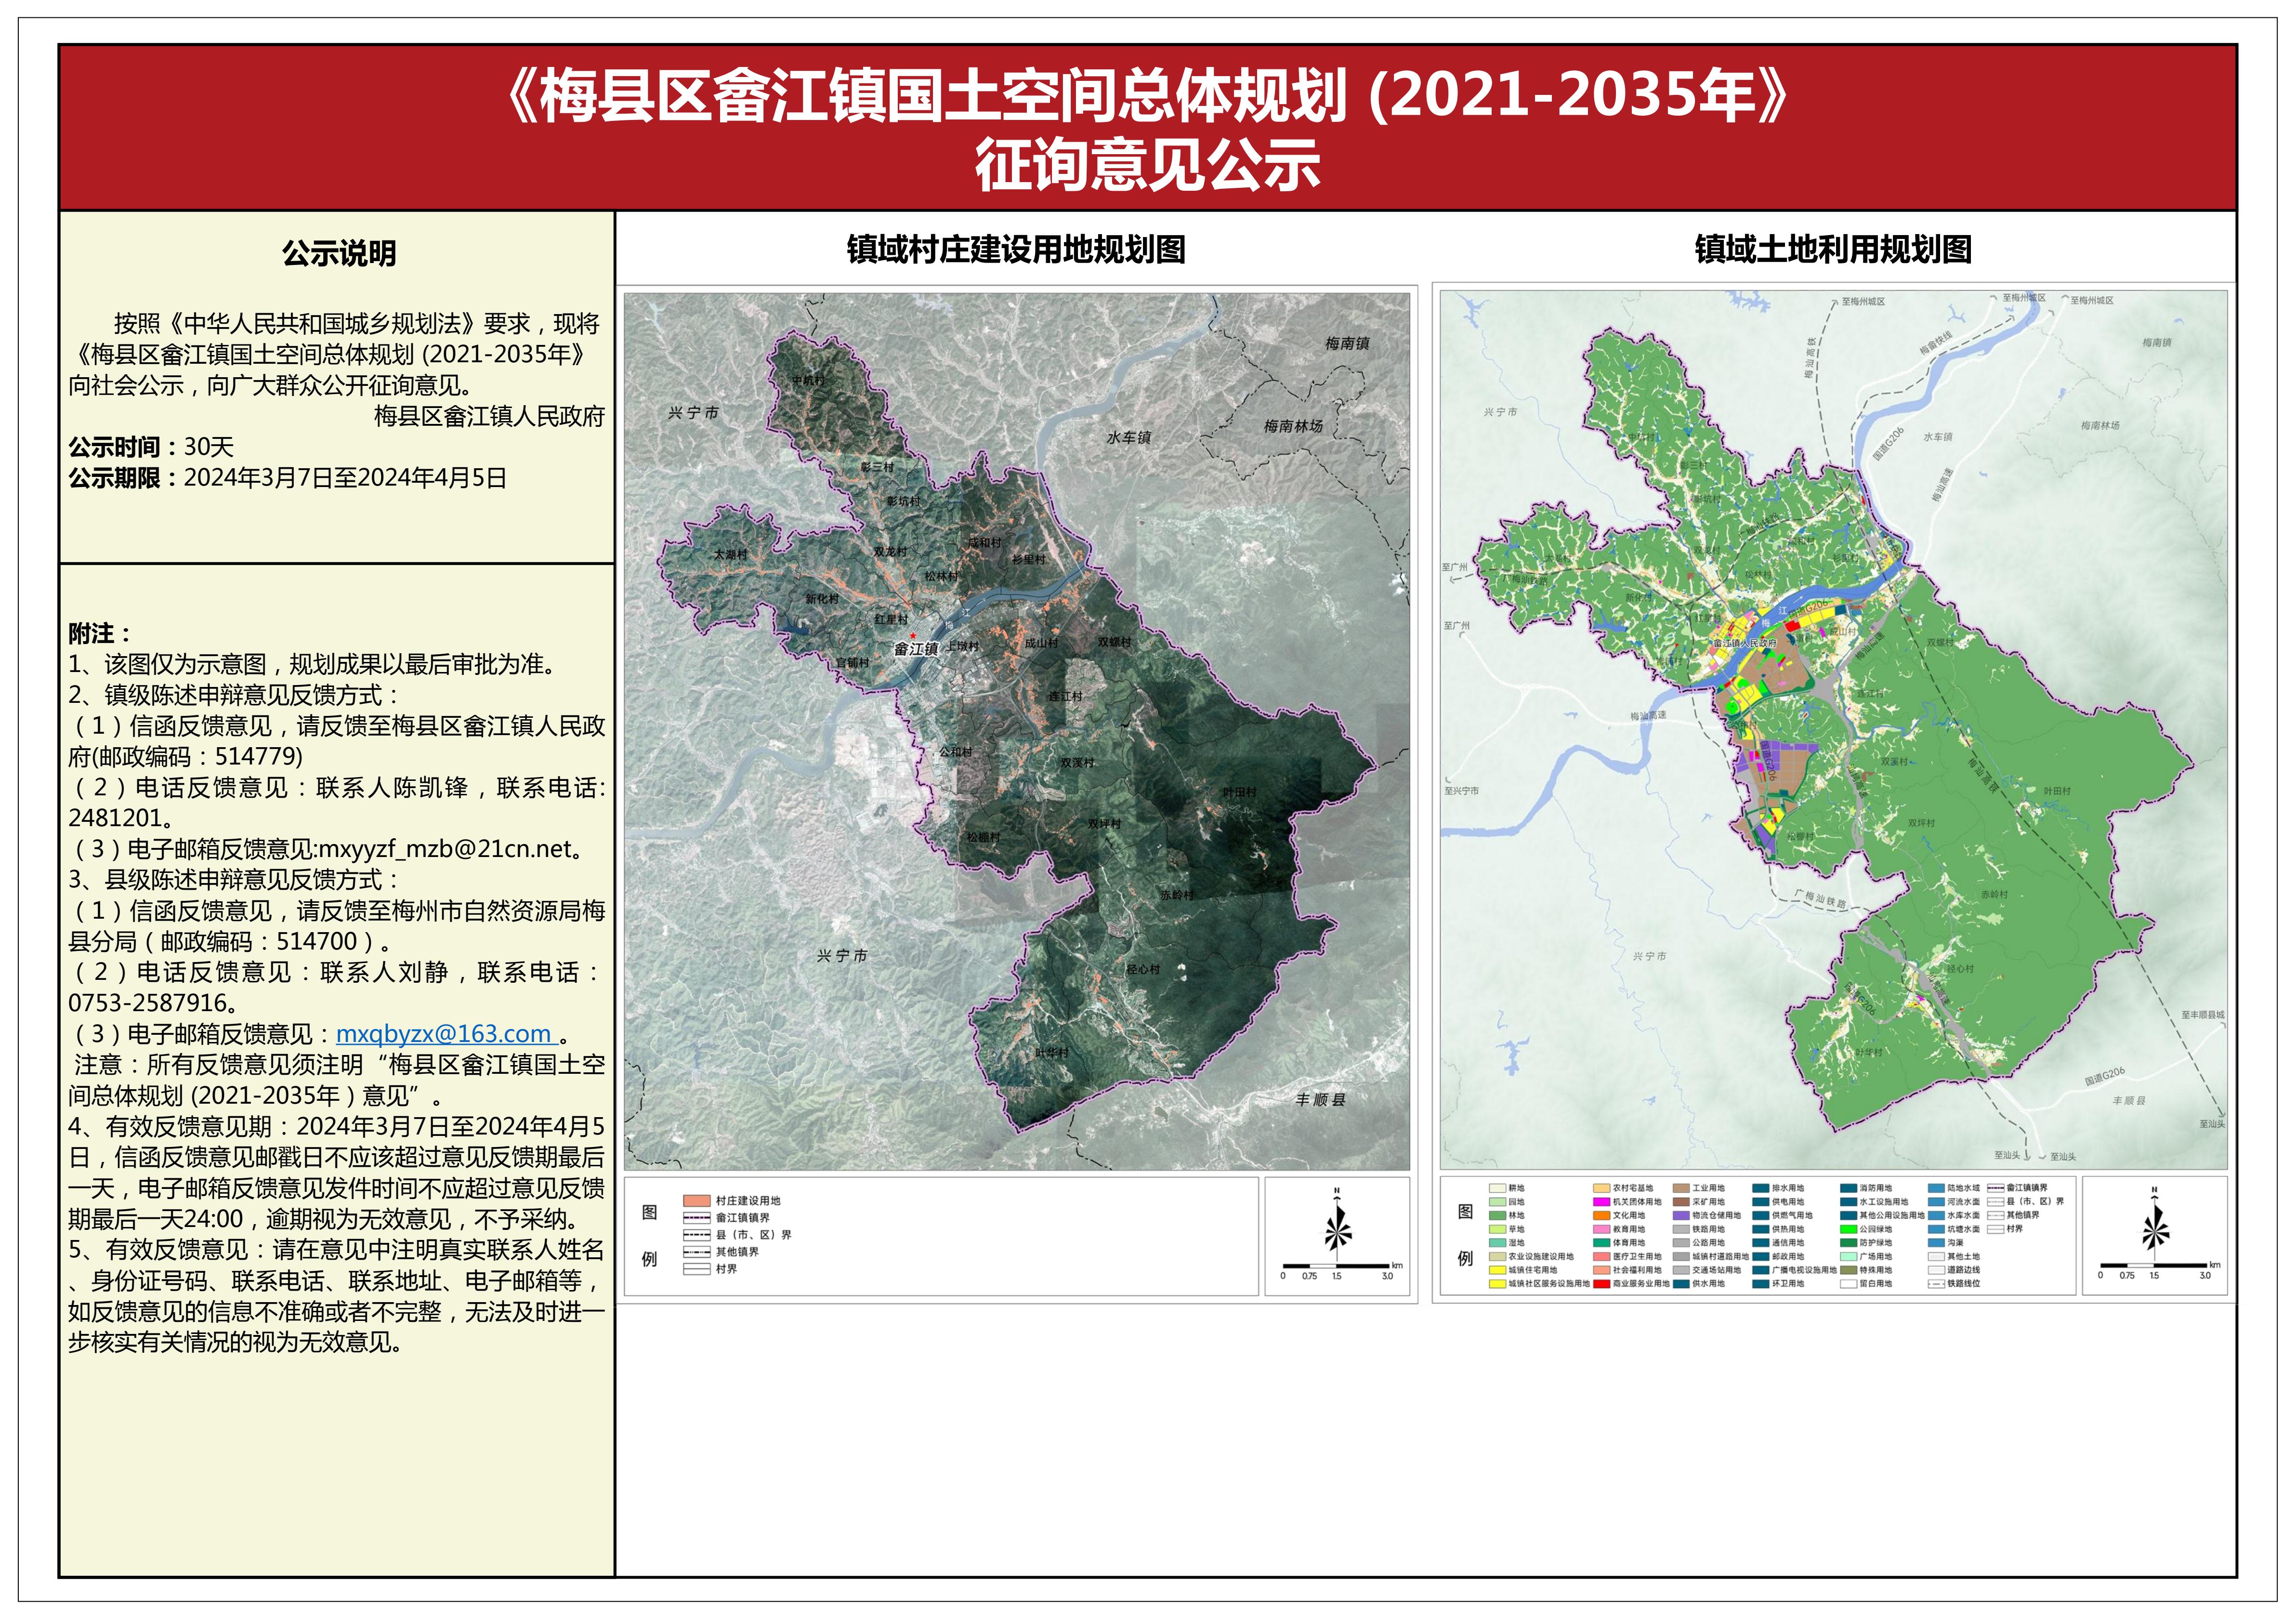 梅县区畲江镇国土空间总体规划（2021-2035年）征询意见公示.jpg